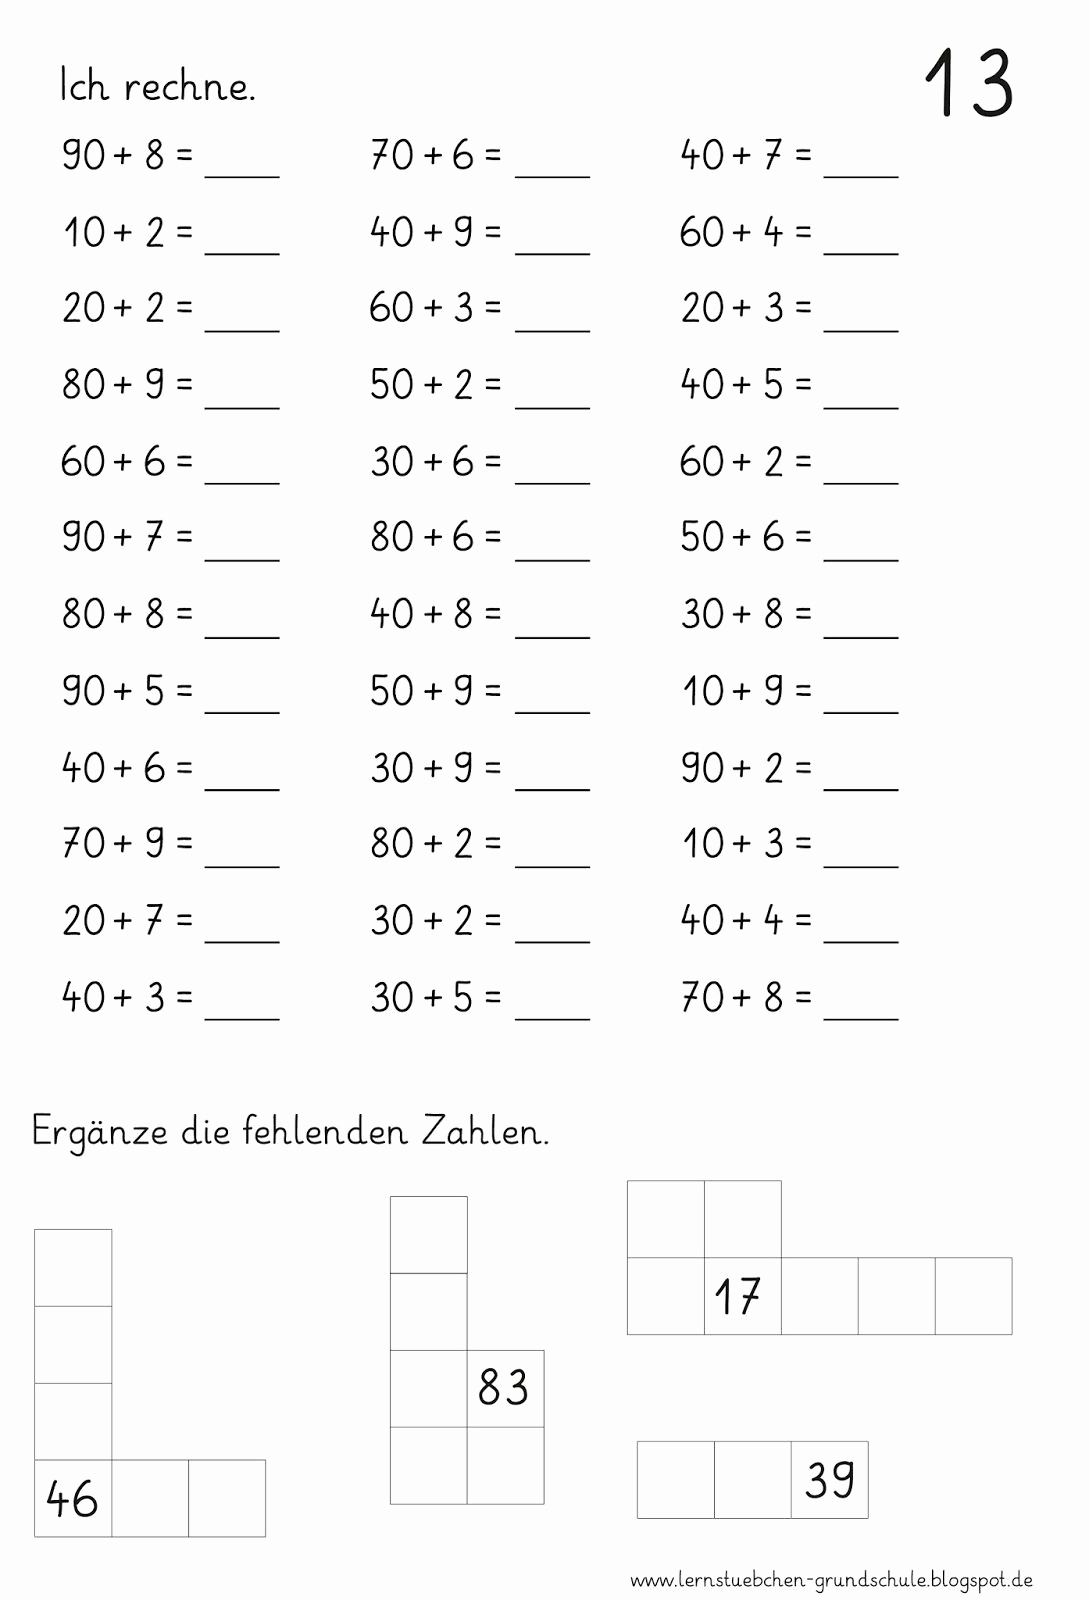 Rechenaufgaben 2 Klasse Zum Ausdrucken Kostenlos verwandt mit Übungsaufgaben Mathe 2 Klasse Zum Ausdrucken